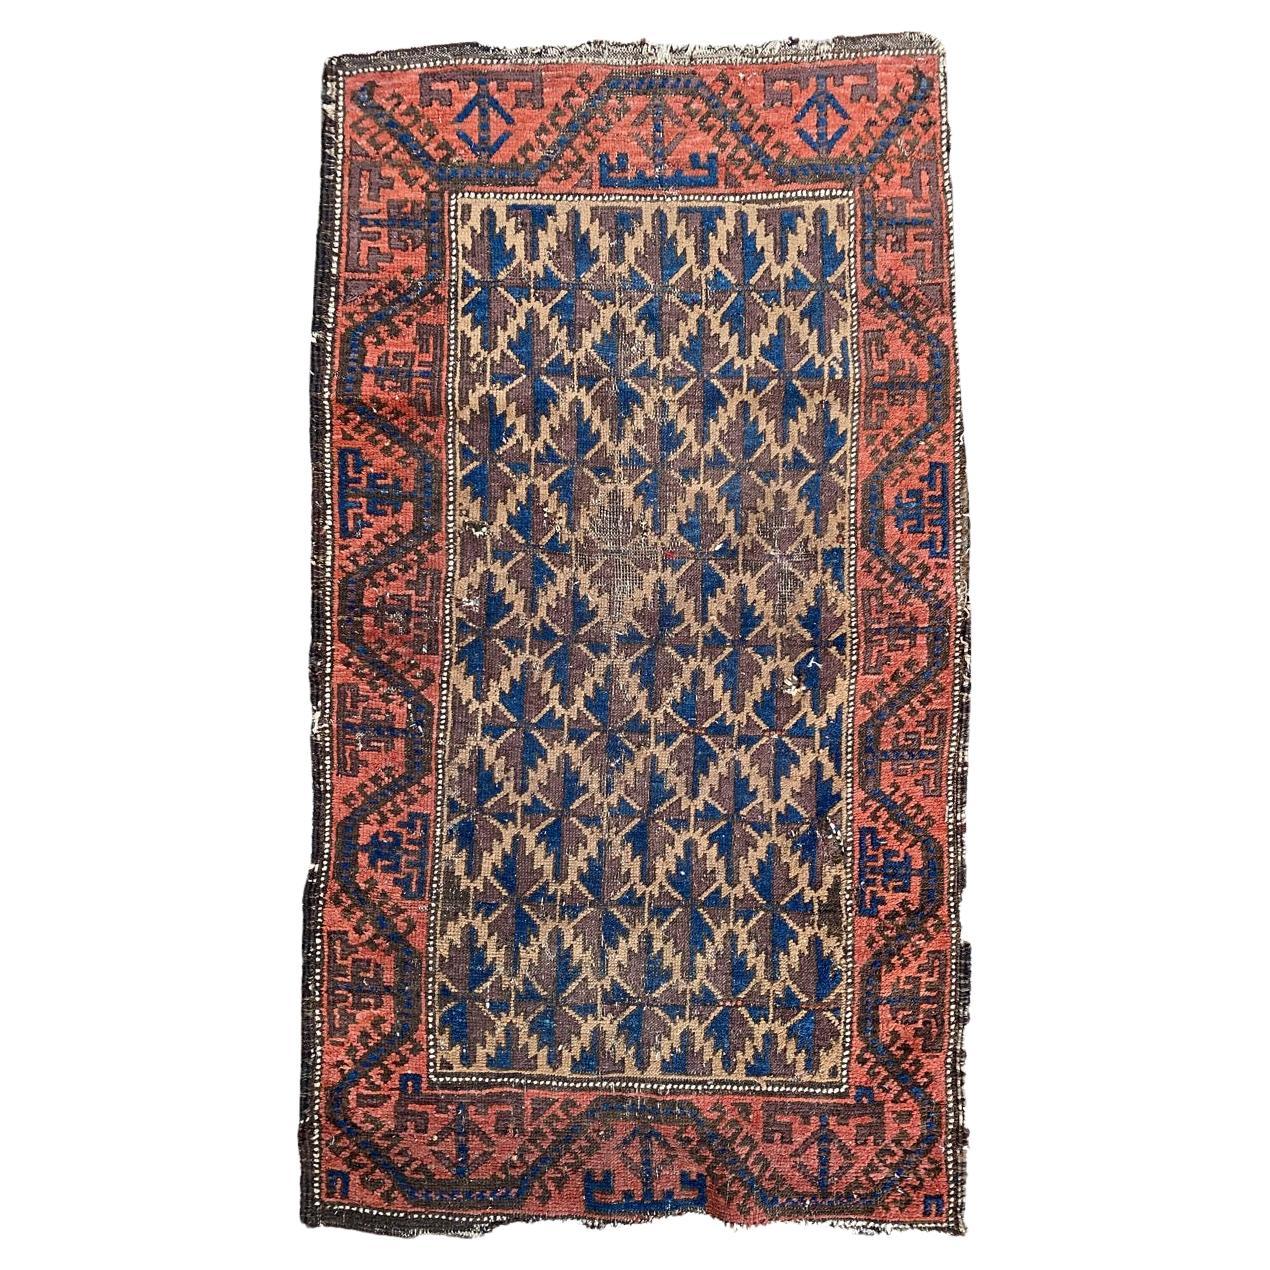 Le joli petit tapis Baluch antique et vieilli de Bobyrug